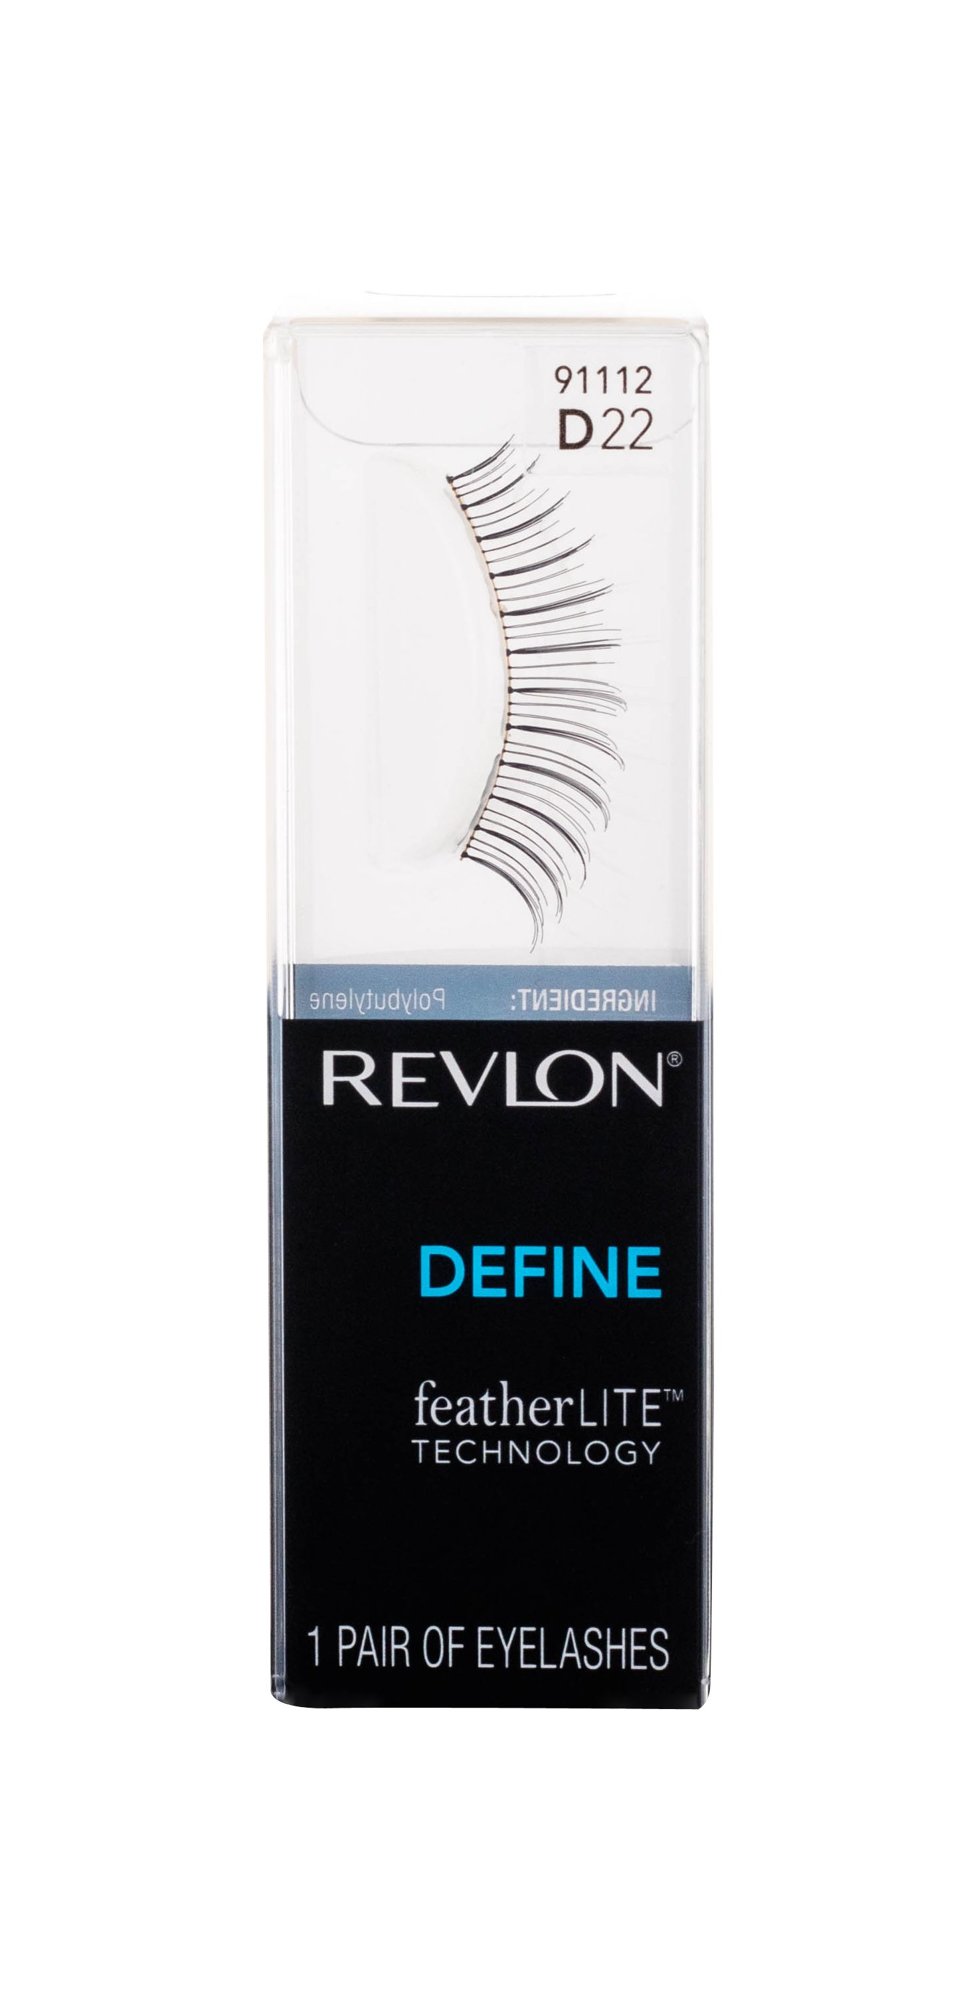 Revlon Define featherLITE Technology dirbtinės blakstienos